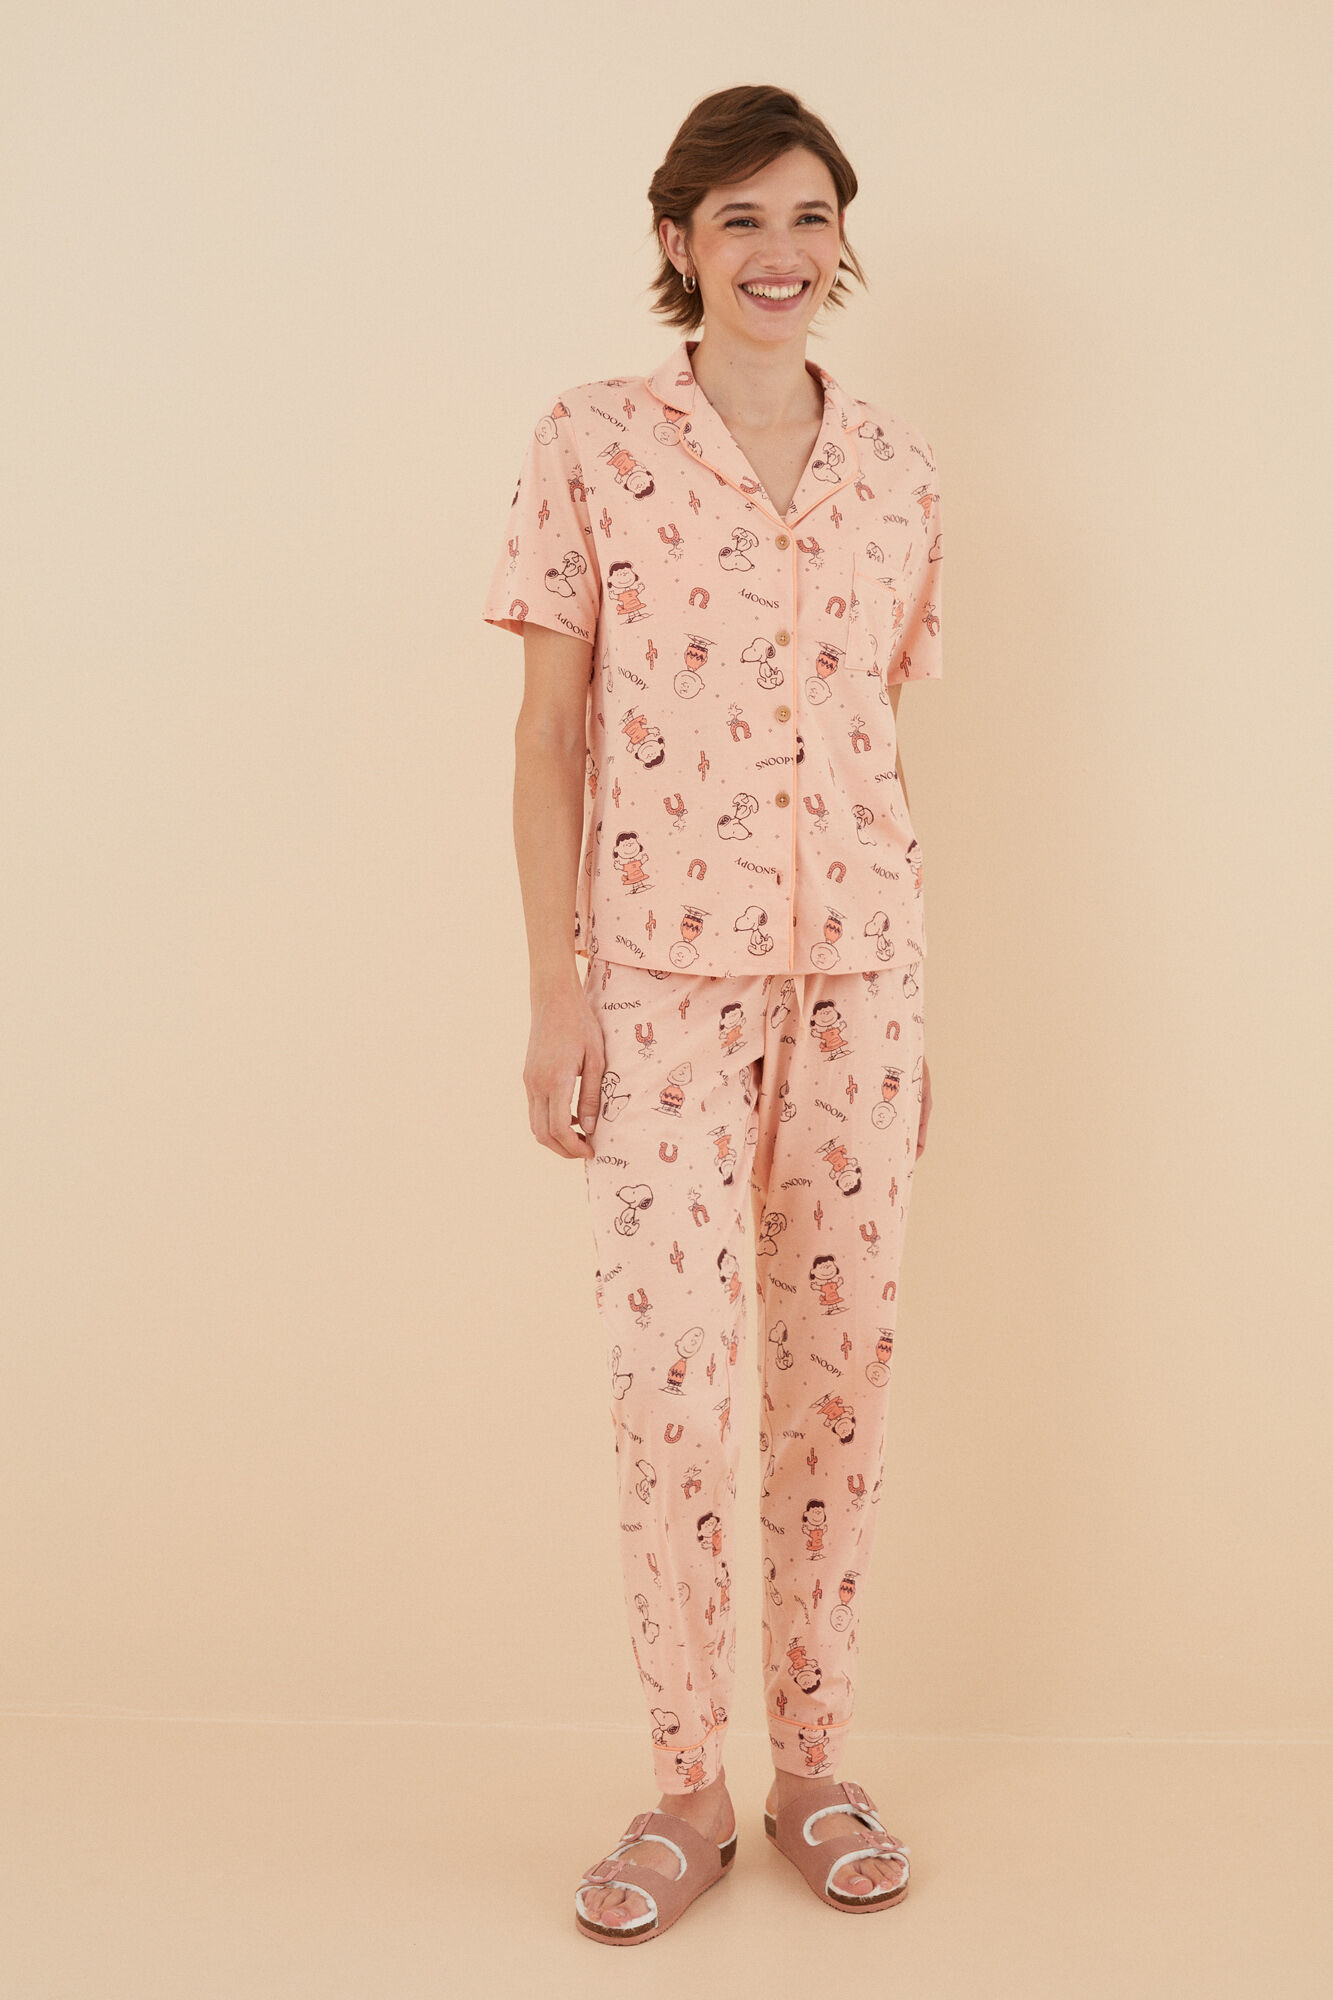 Pijama camisero 100% algodón Snoopy rosa | Ropa de dormir de mujer y homewear | WomenSecret